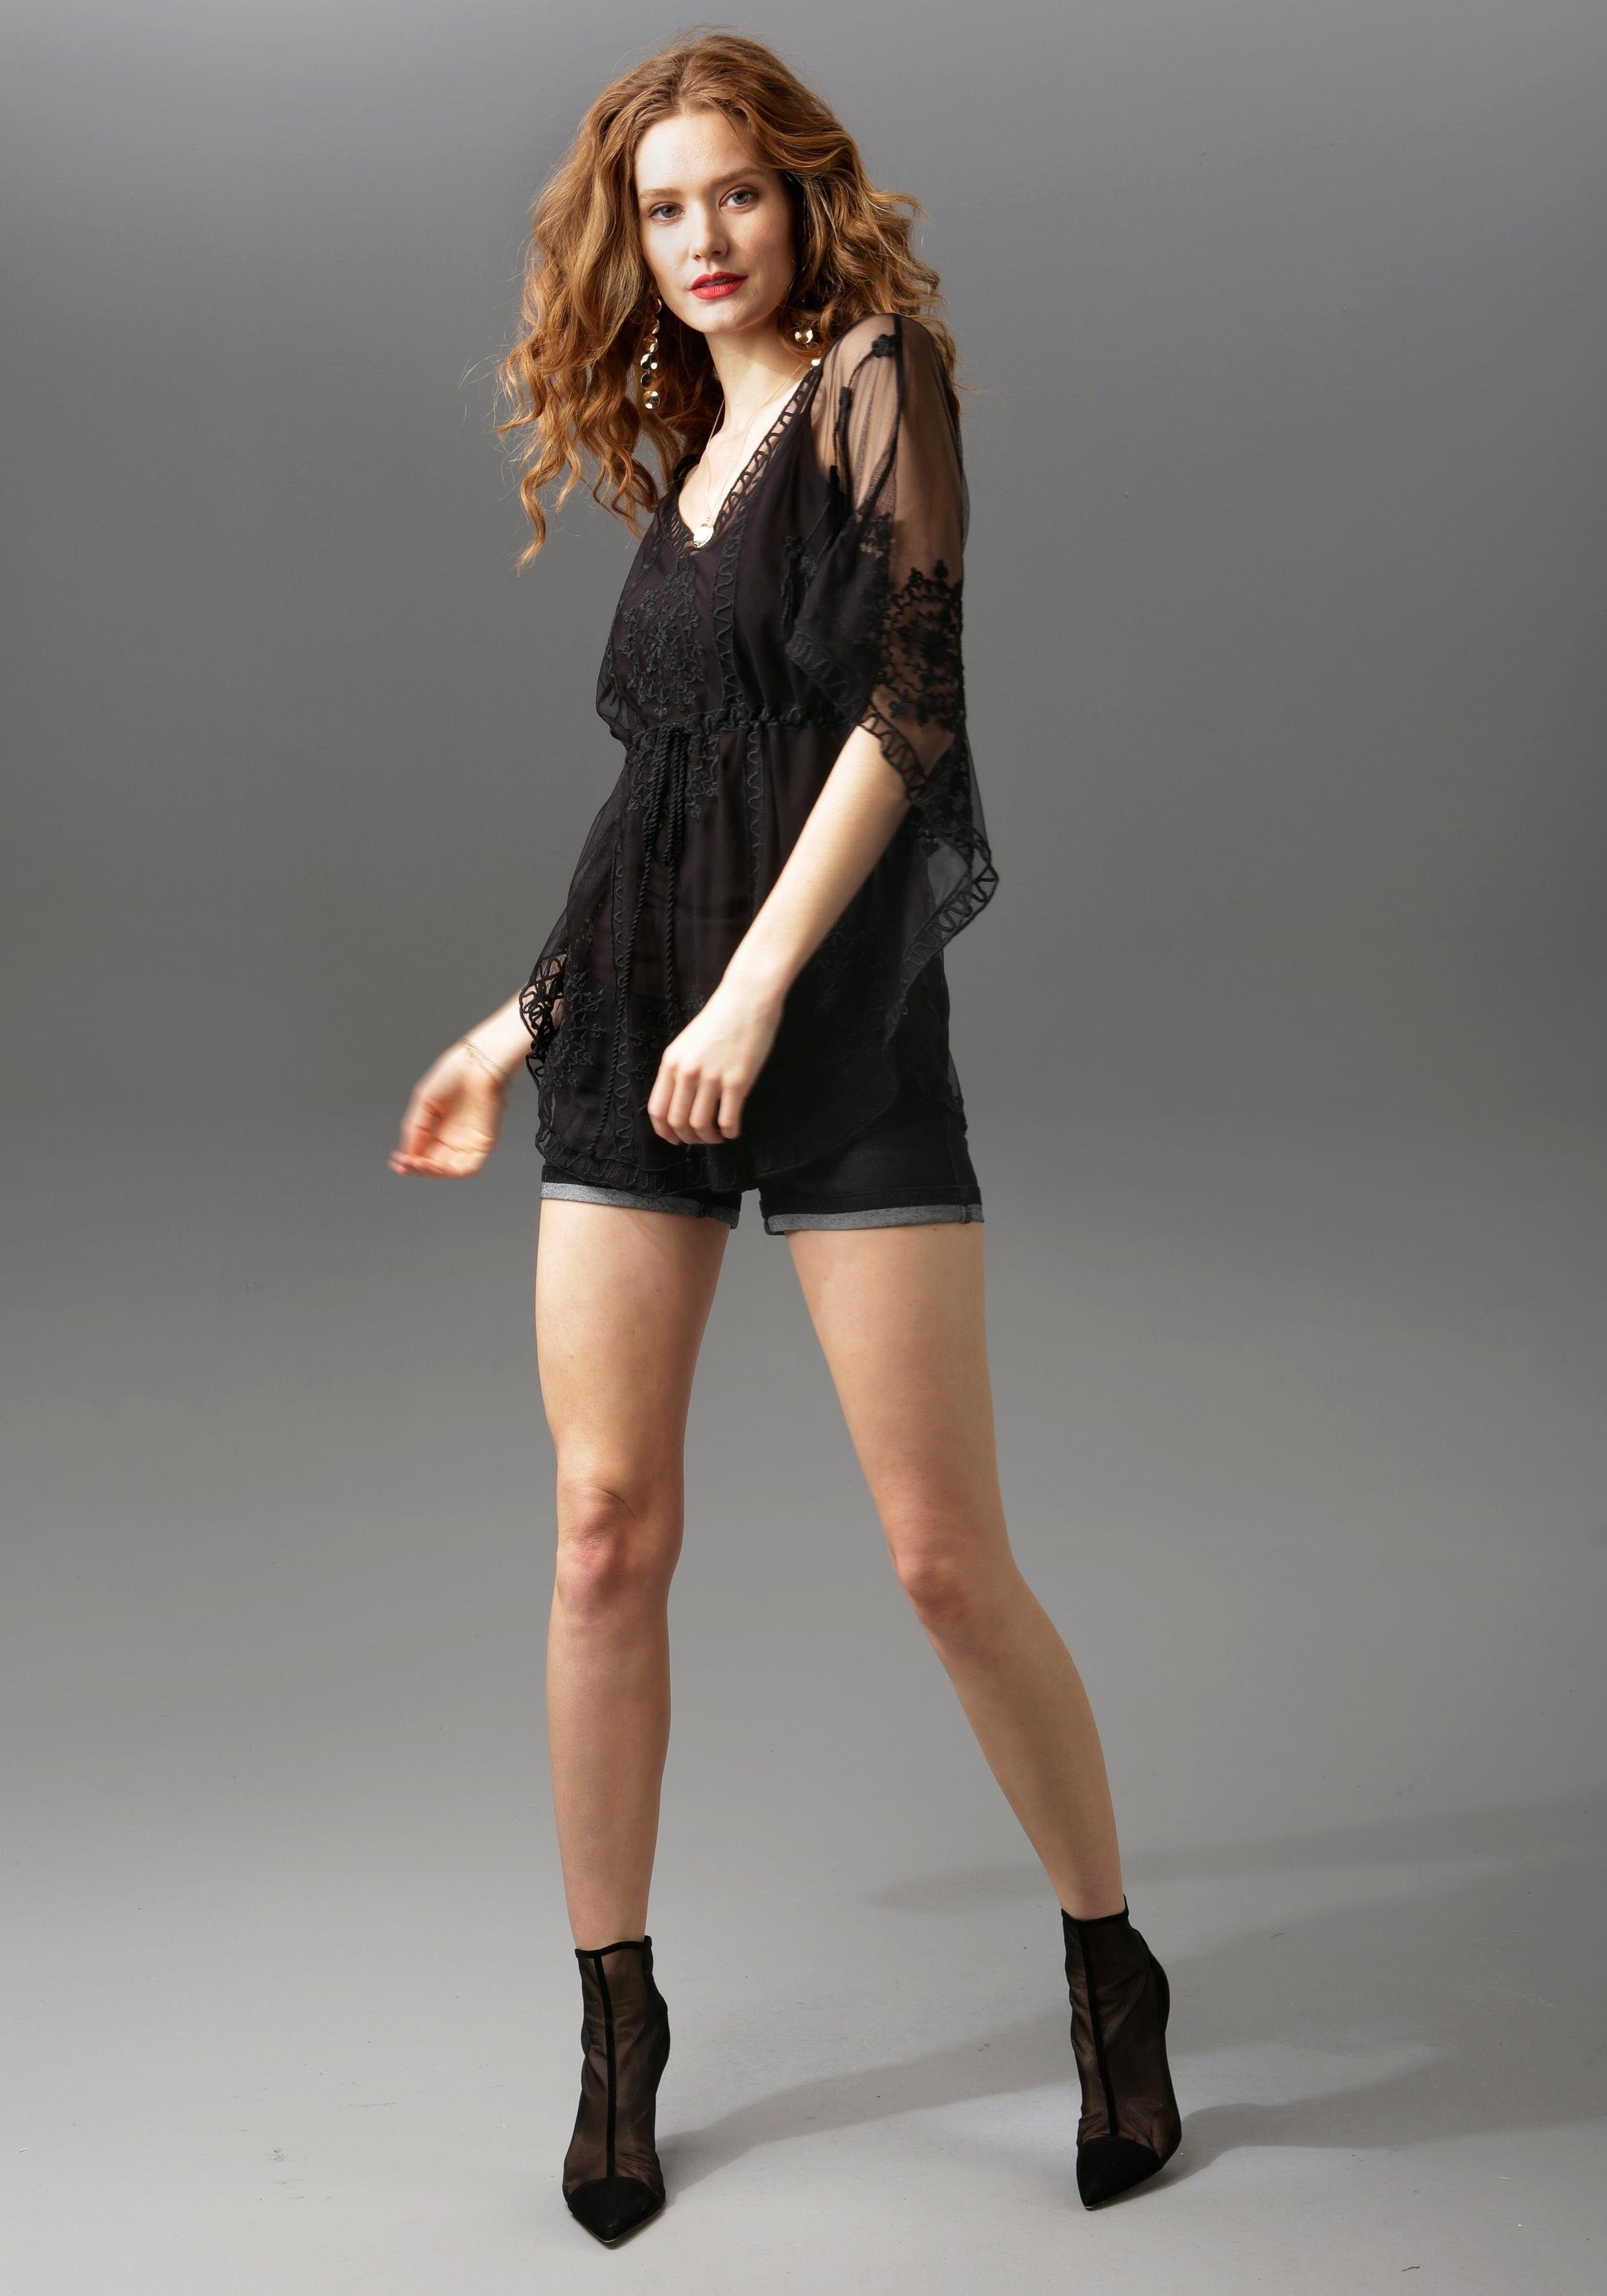 Aniston CASUAL Jeansshorts mit black Abriebeffekte leichten